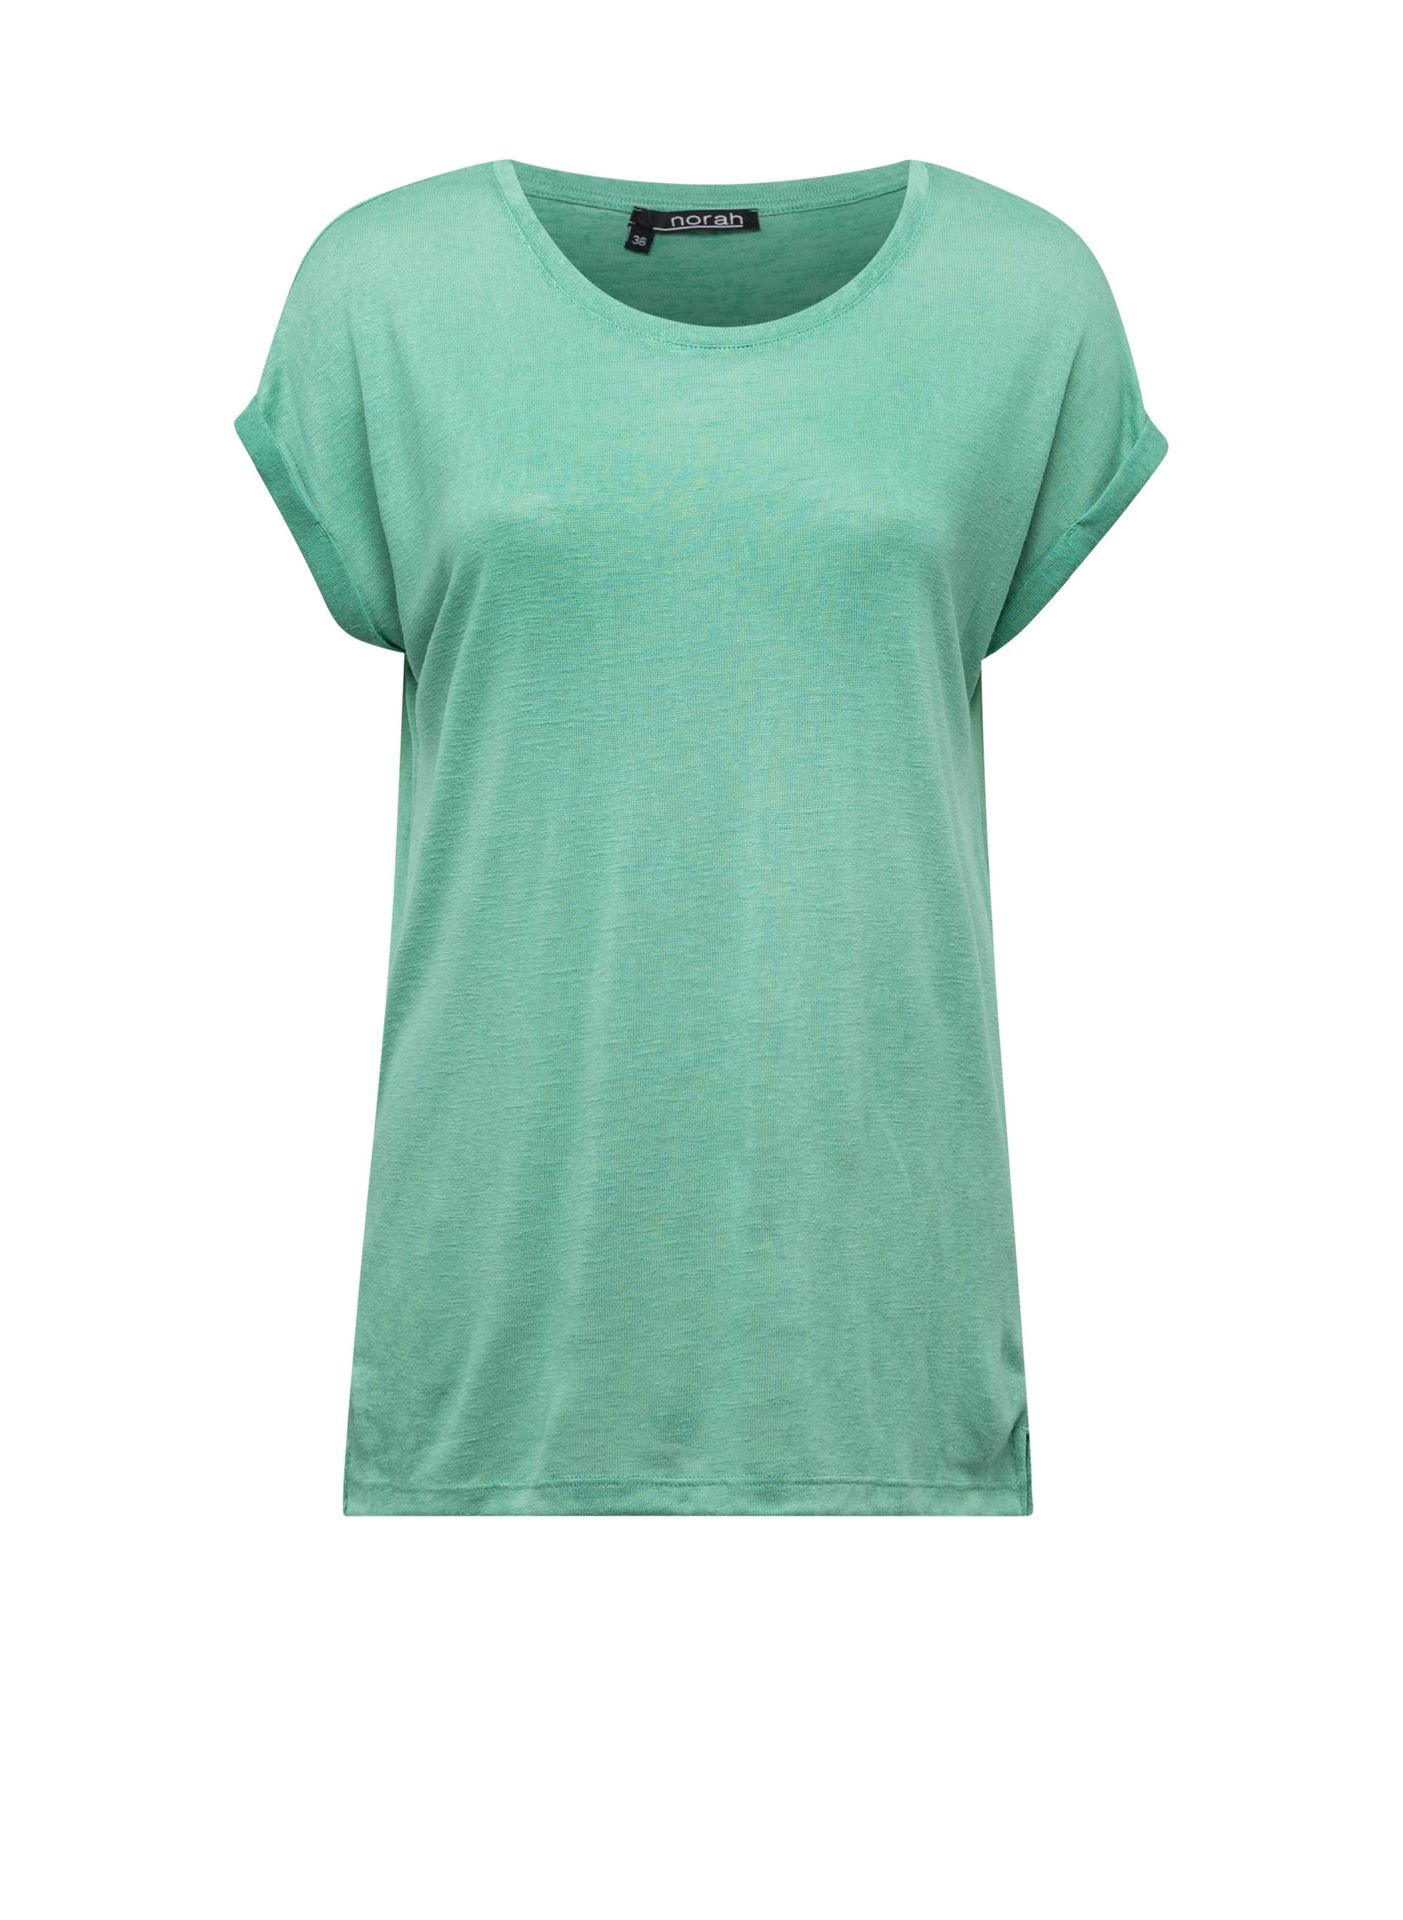  Groen shirt green 211185-500-40